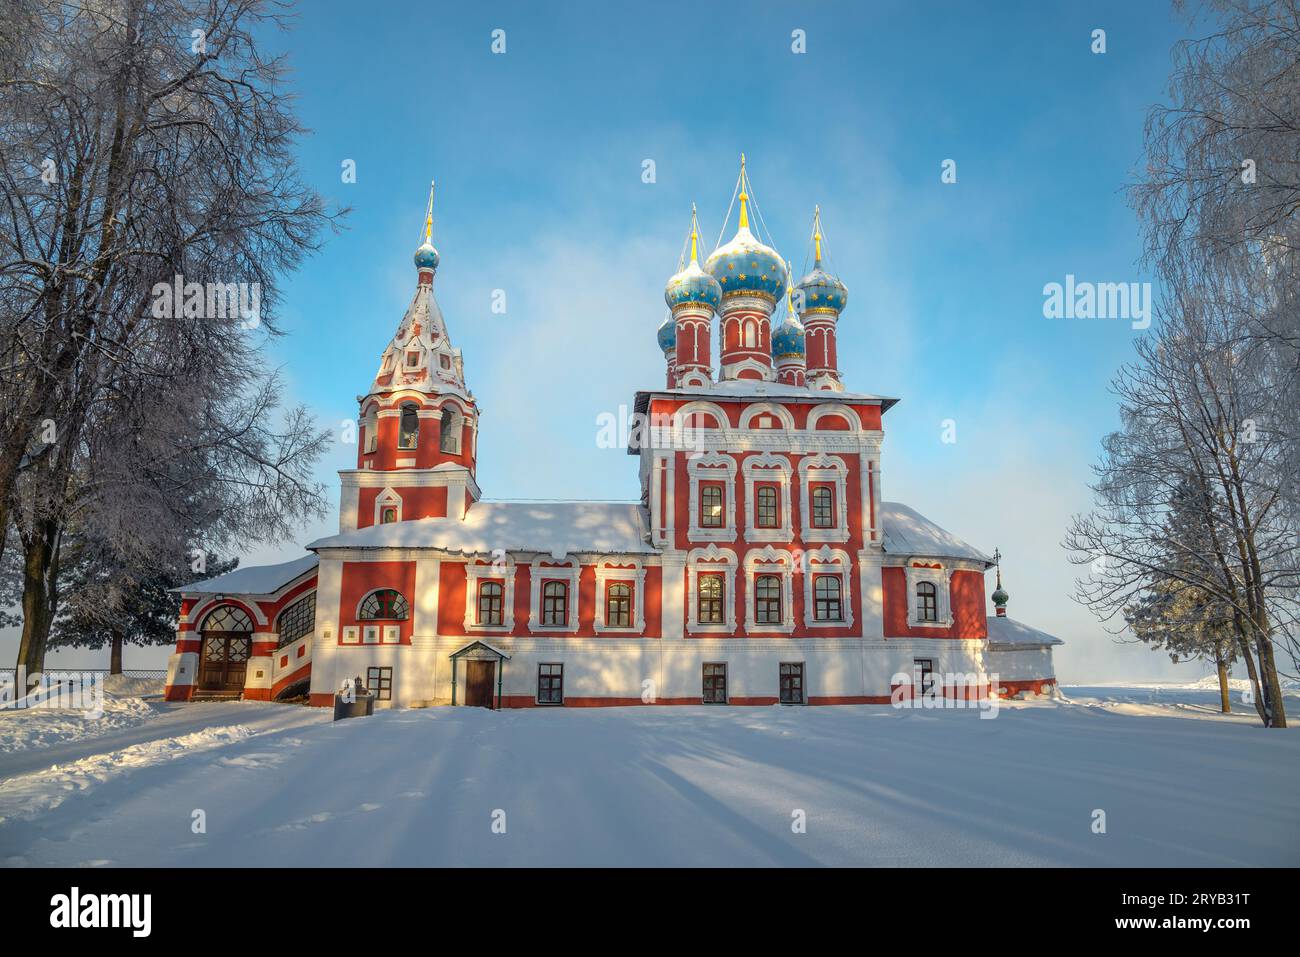 L'antica chiesa di Tsarevich Dimitri sul sangue del paesaggio invernale. Uglich, regione di Yaroslavl, Russia Foto Stock